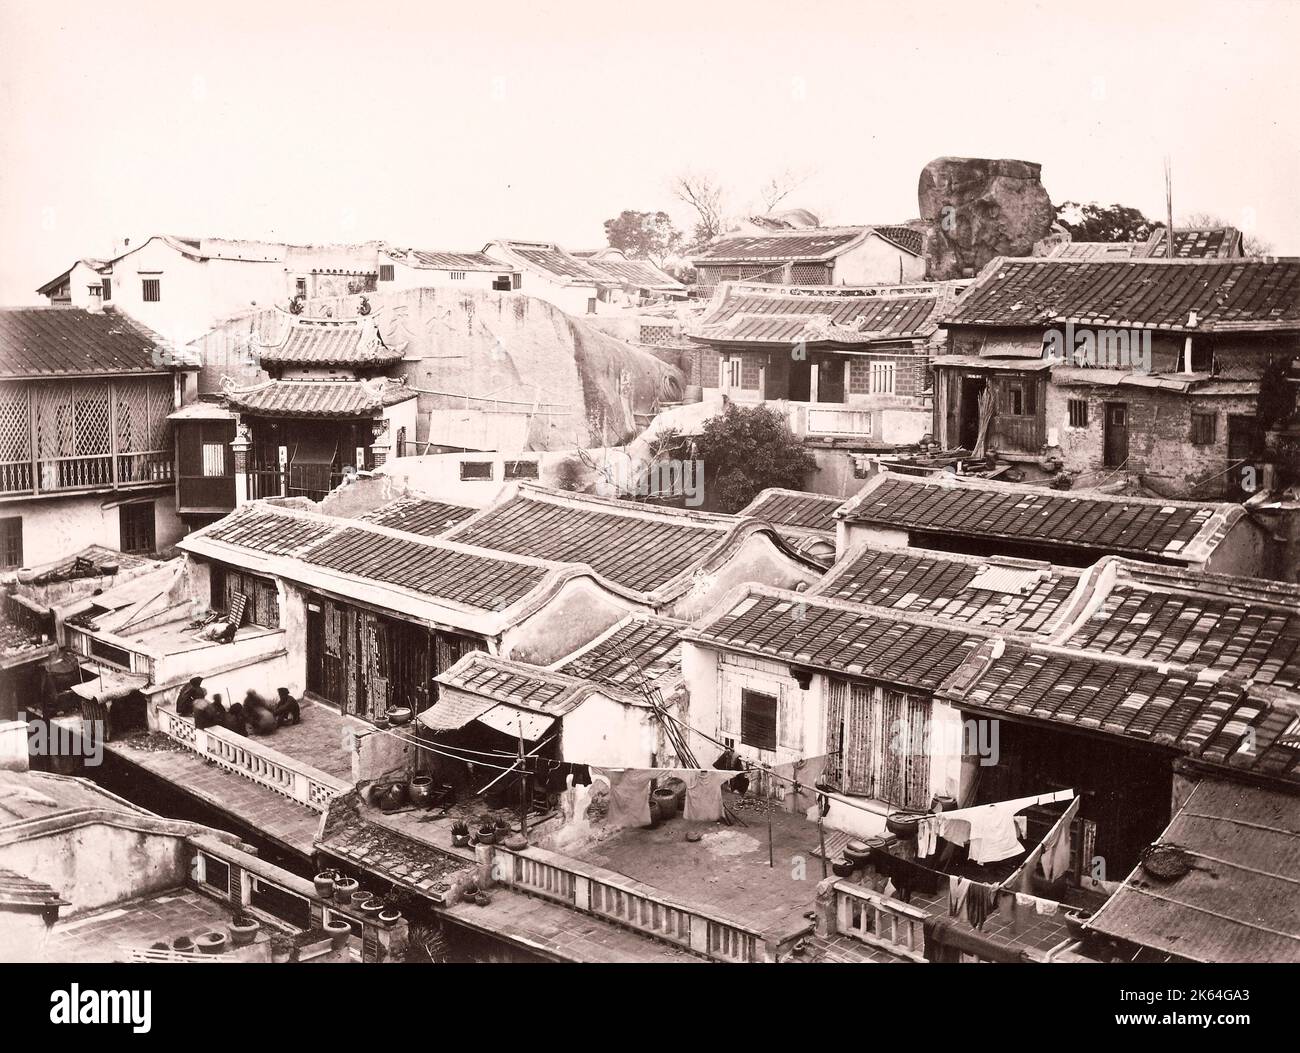 John Thomson (14 juin 1837 - 29 septembre 1921) photographe écossais, actif en Chine vers 1870, d'un album de ses images: Houses at Amoy, Xiamen Banque D'Images